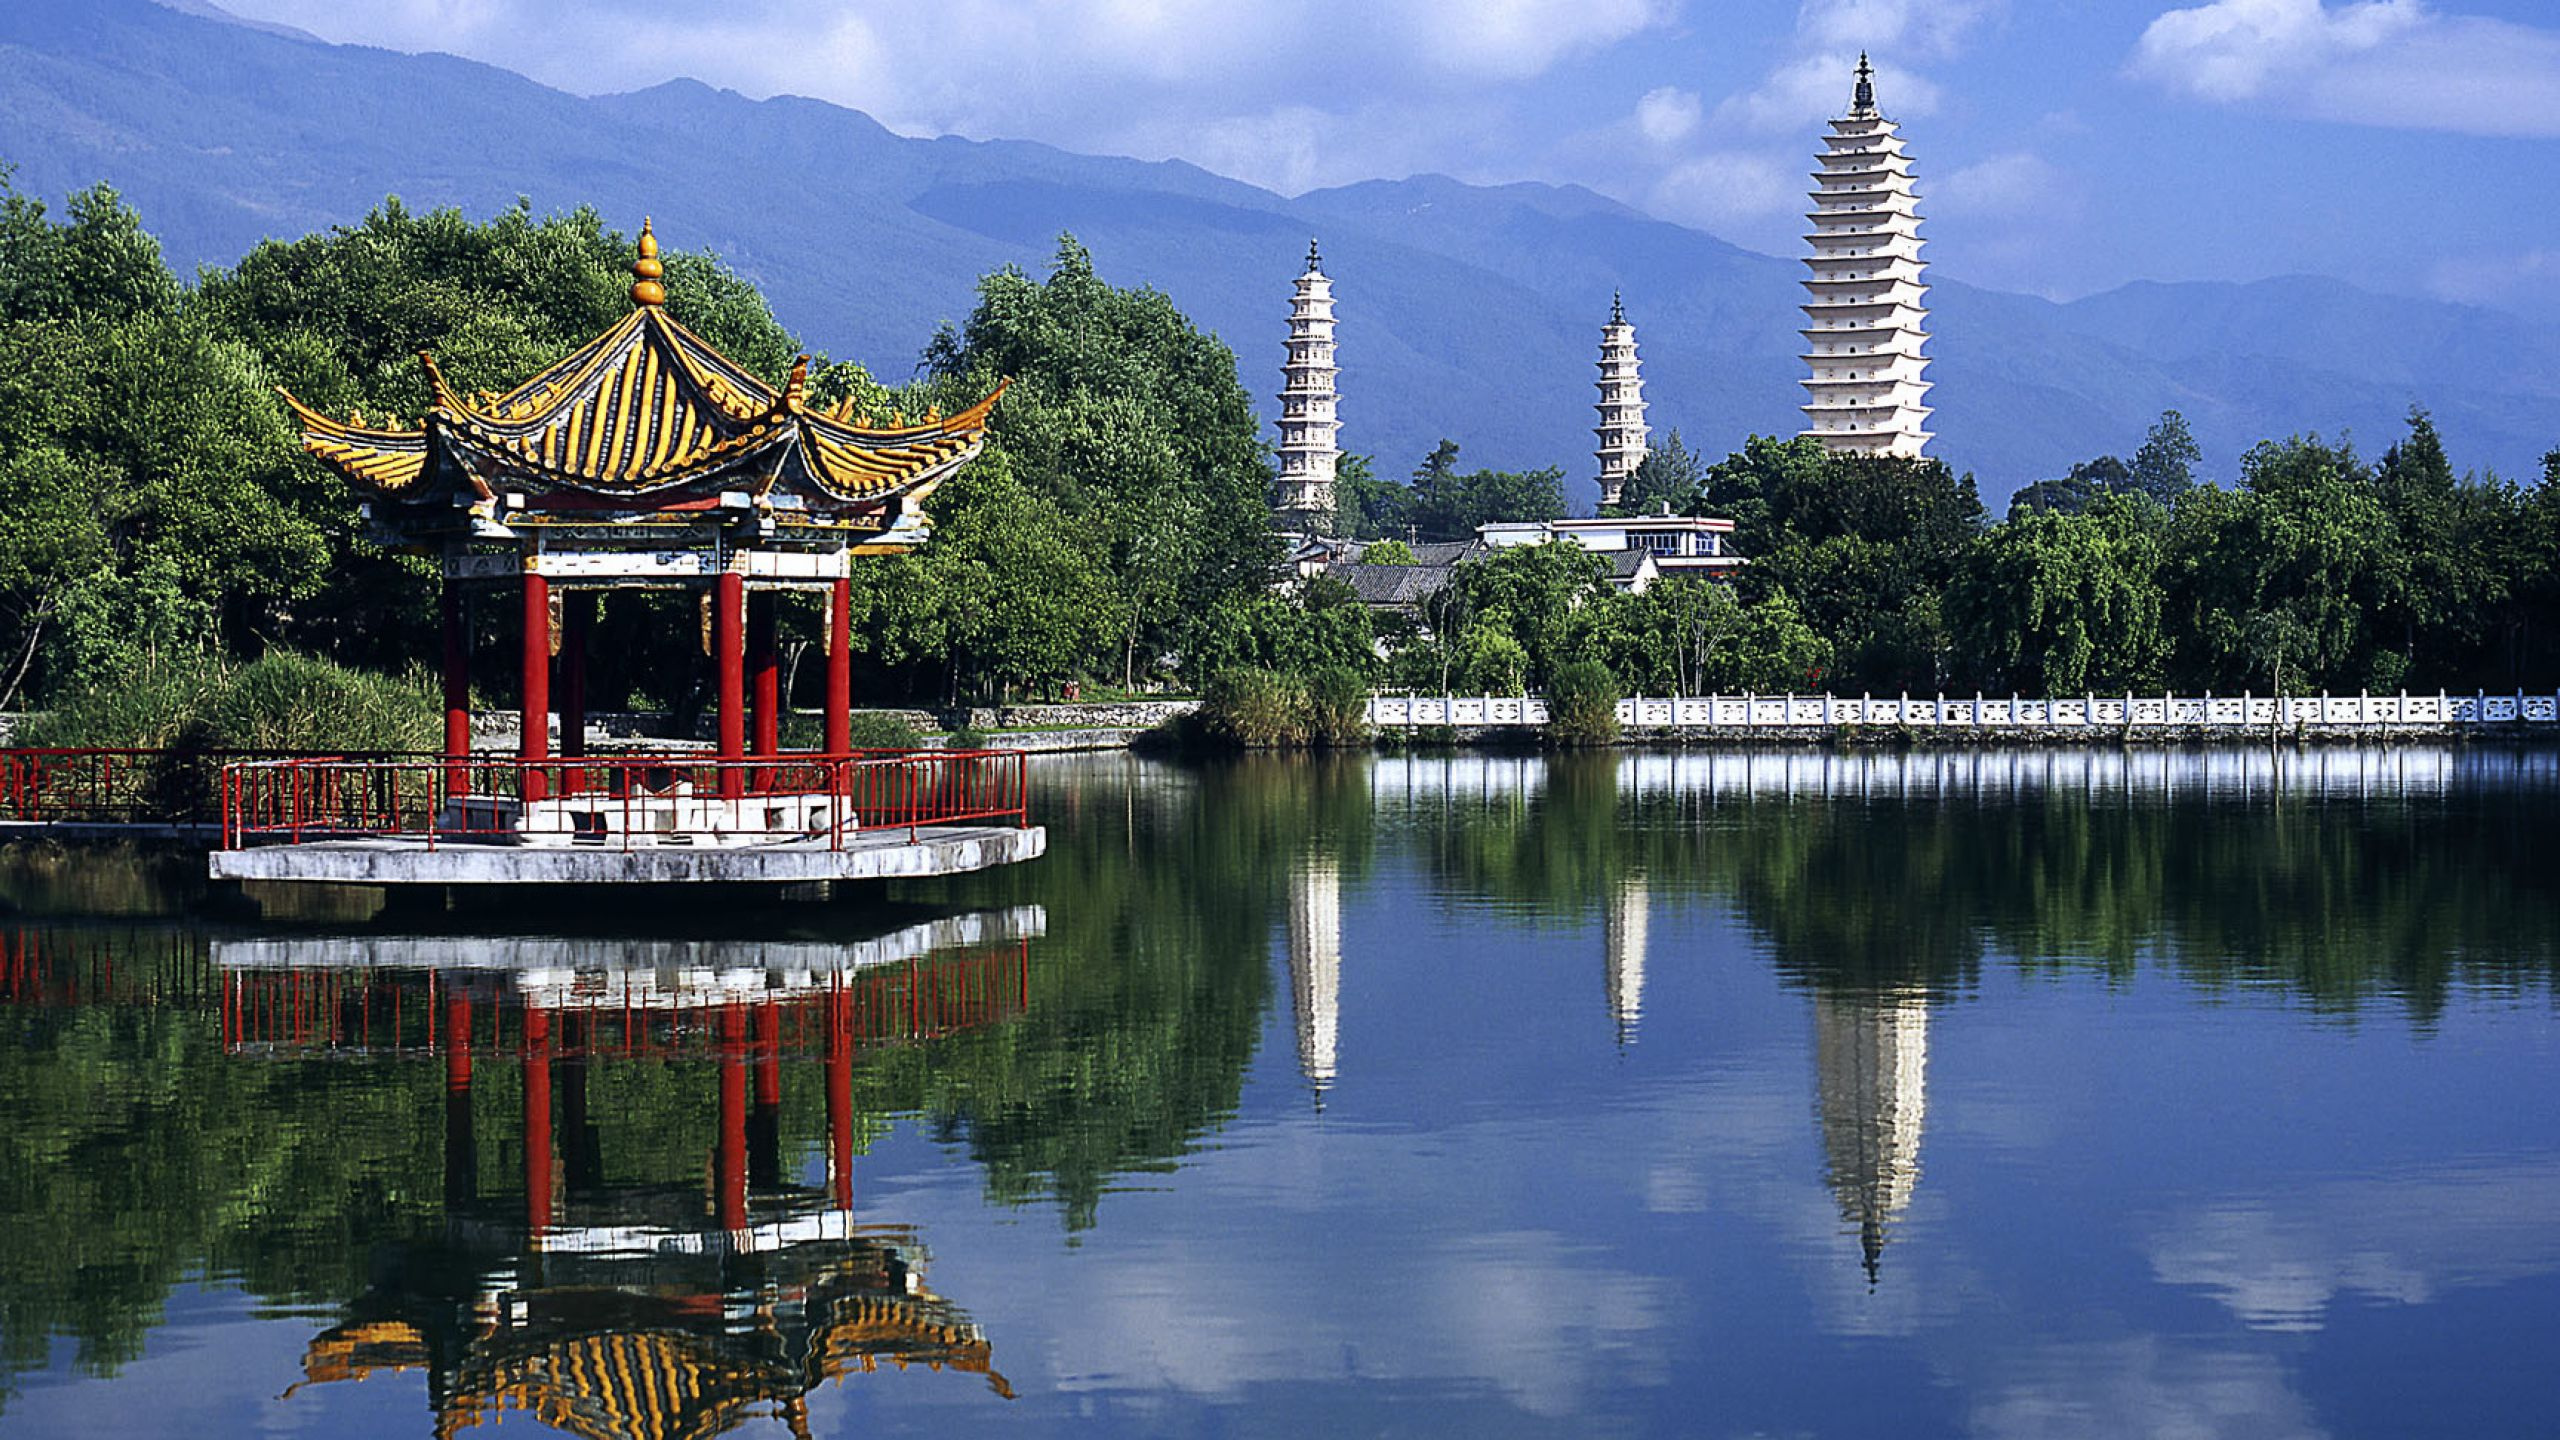 中国, 反射, 中国建筑, 性质, 旅游景点 壁纸 2560x1440 允许